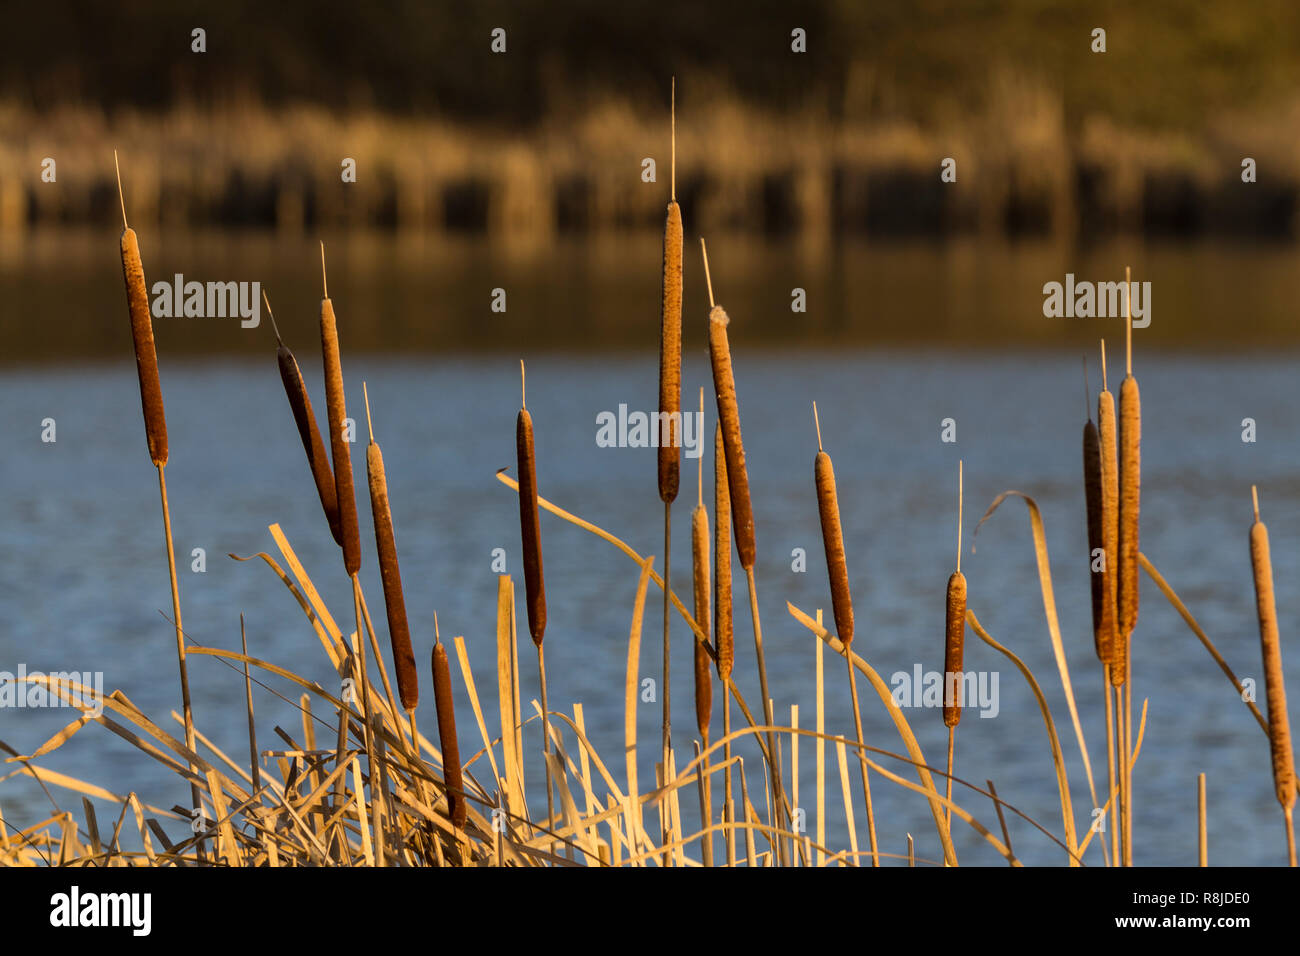 Rohrkolben große Reed mace oder Typha latifolia in goldenen niedrige Winter Sonnenlicht am Wasser UK. Segge Pflanze von Süßwasser Margen. Stockfoto